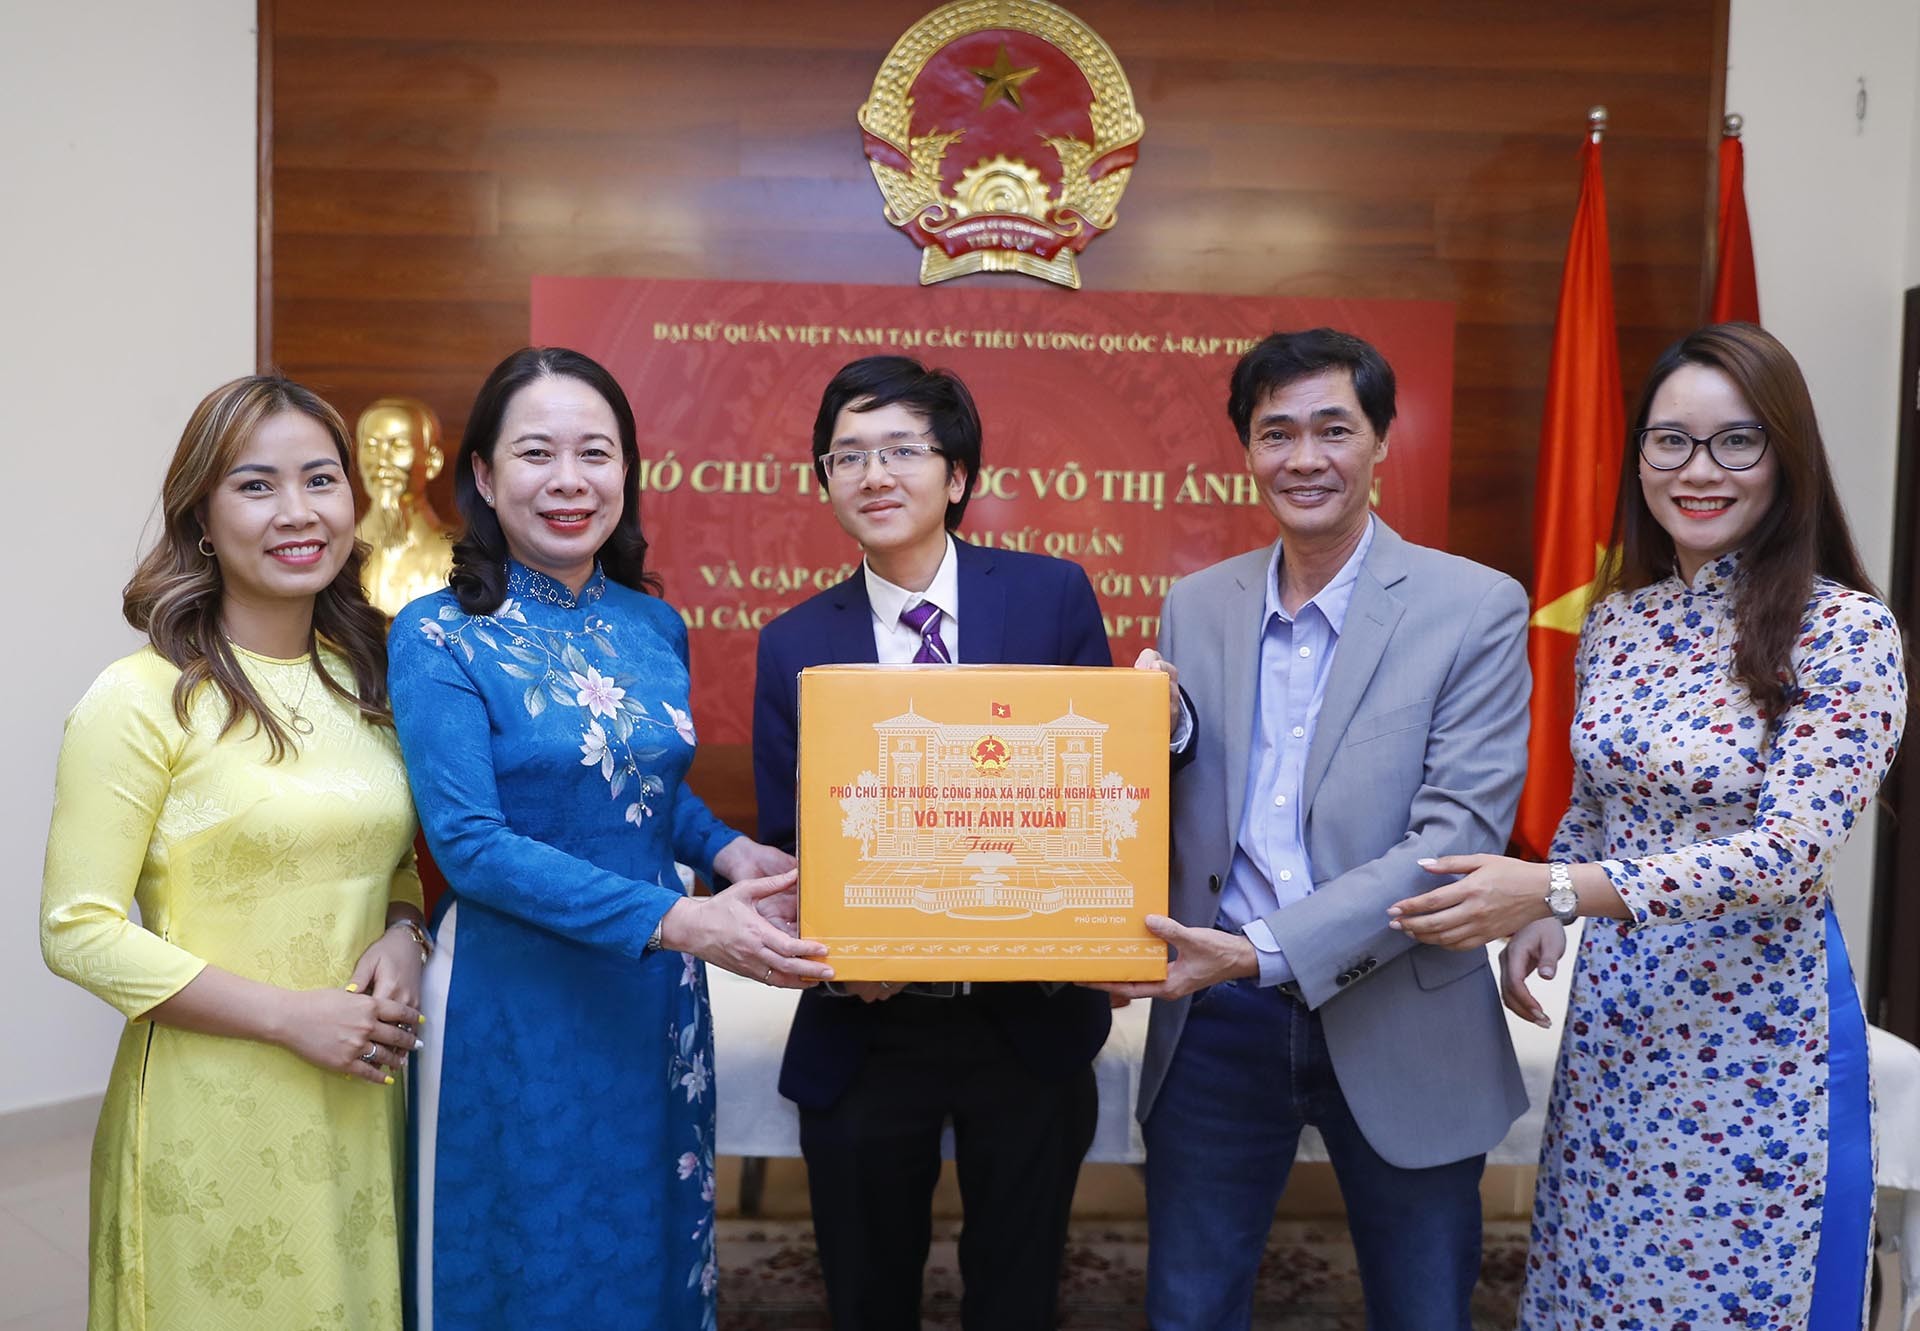 Phó Chủ tịch nước Võ Thị Ánh Xuân trao quà tặng đại diện cộng đồng người Việt Nam đang sinh sống, làm việc và học tập tại UAE. (Nguồn: TTXVN)